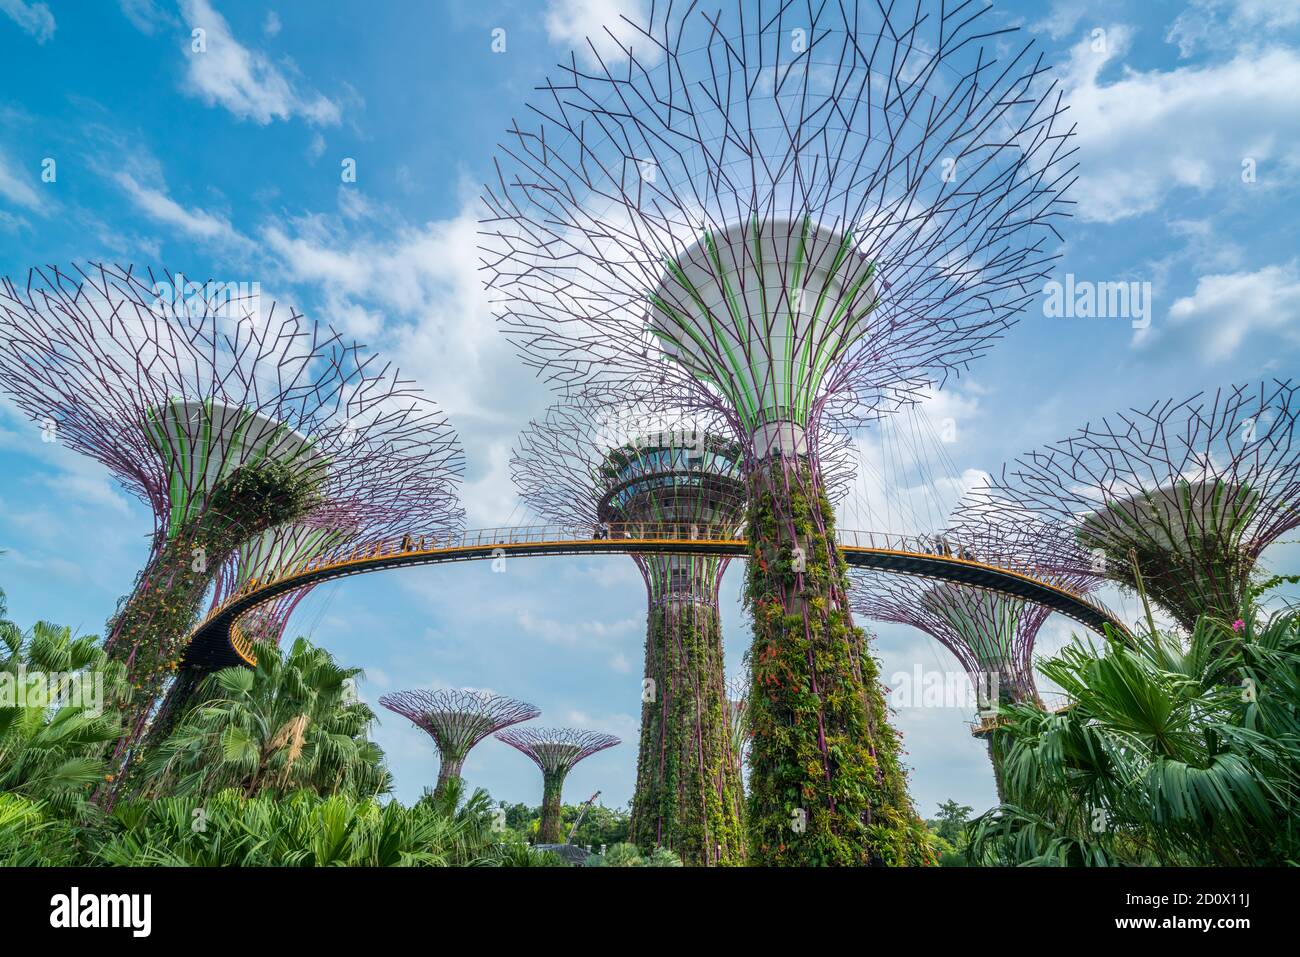 SINGAPOUR - 10 FÉVRIER 2017 : Singapour Supertrees dans un jardin près de la baie sous le ciel bleu à la baie sud de Singapour. Paysage urbain et horizon de la ville dans Banque D'Images